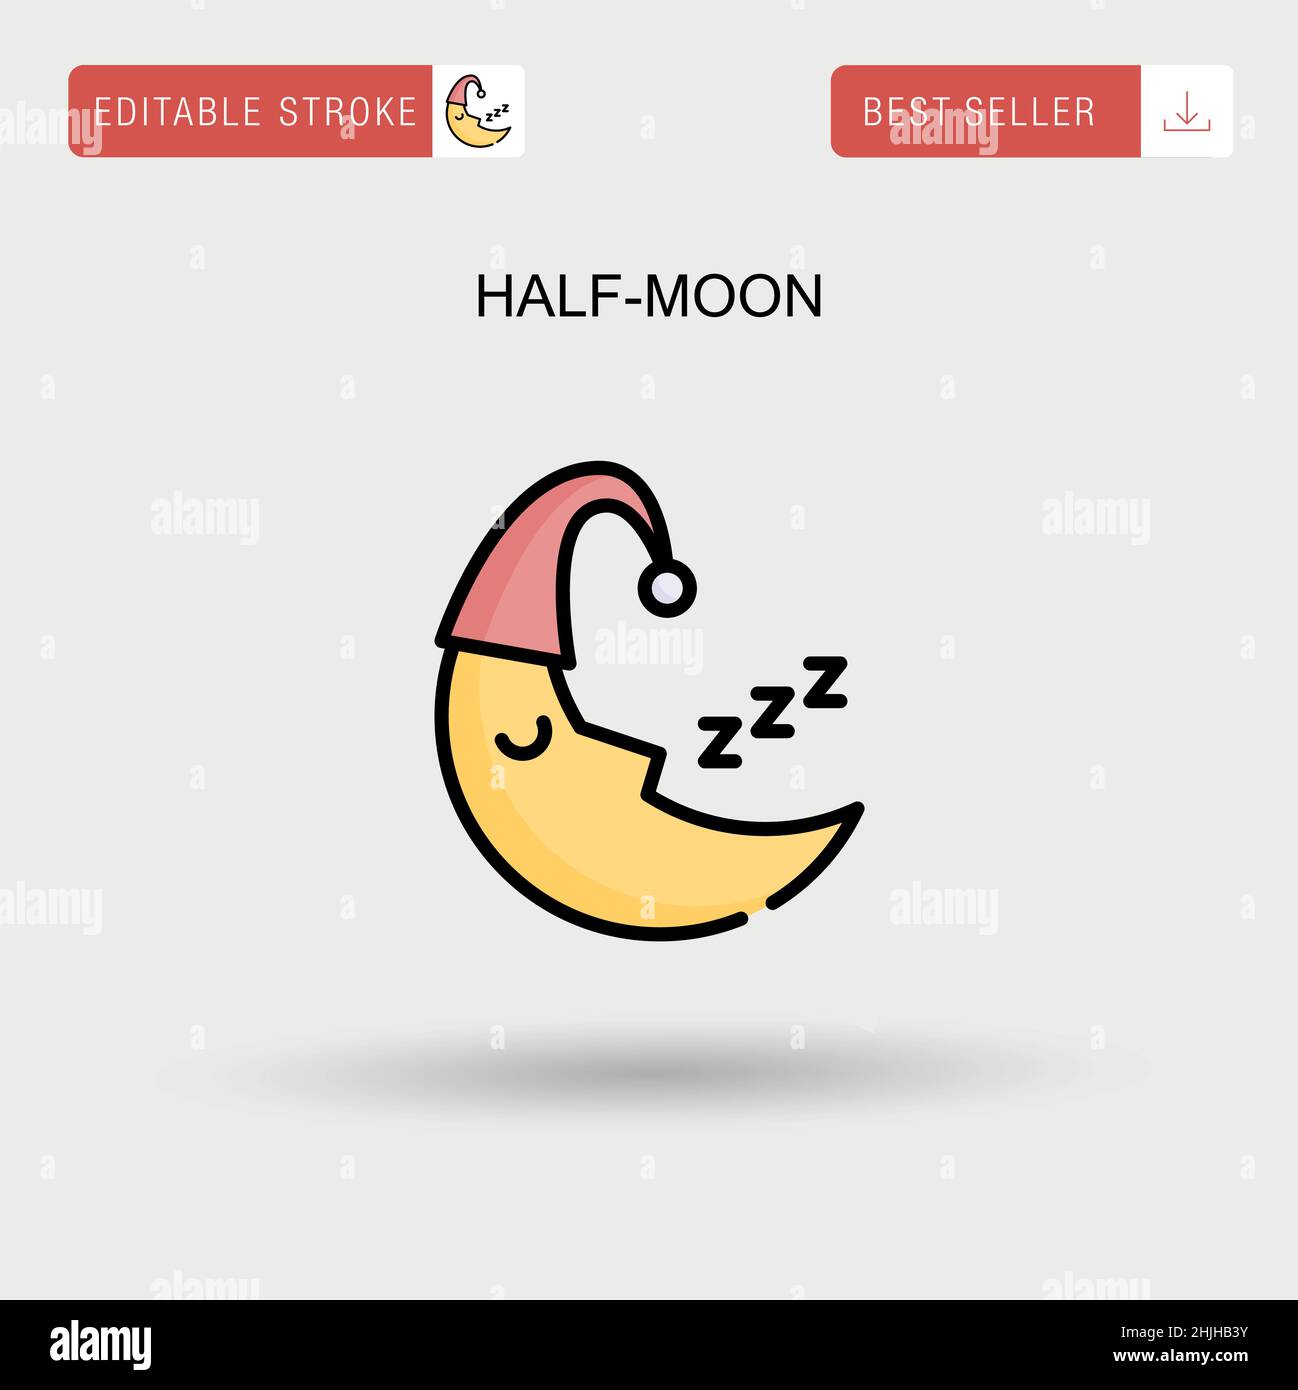 Half-moon Simple vector icon. Stock Vector